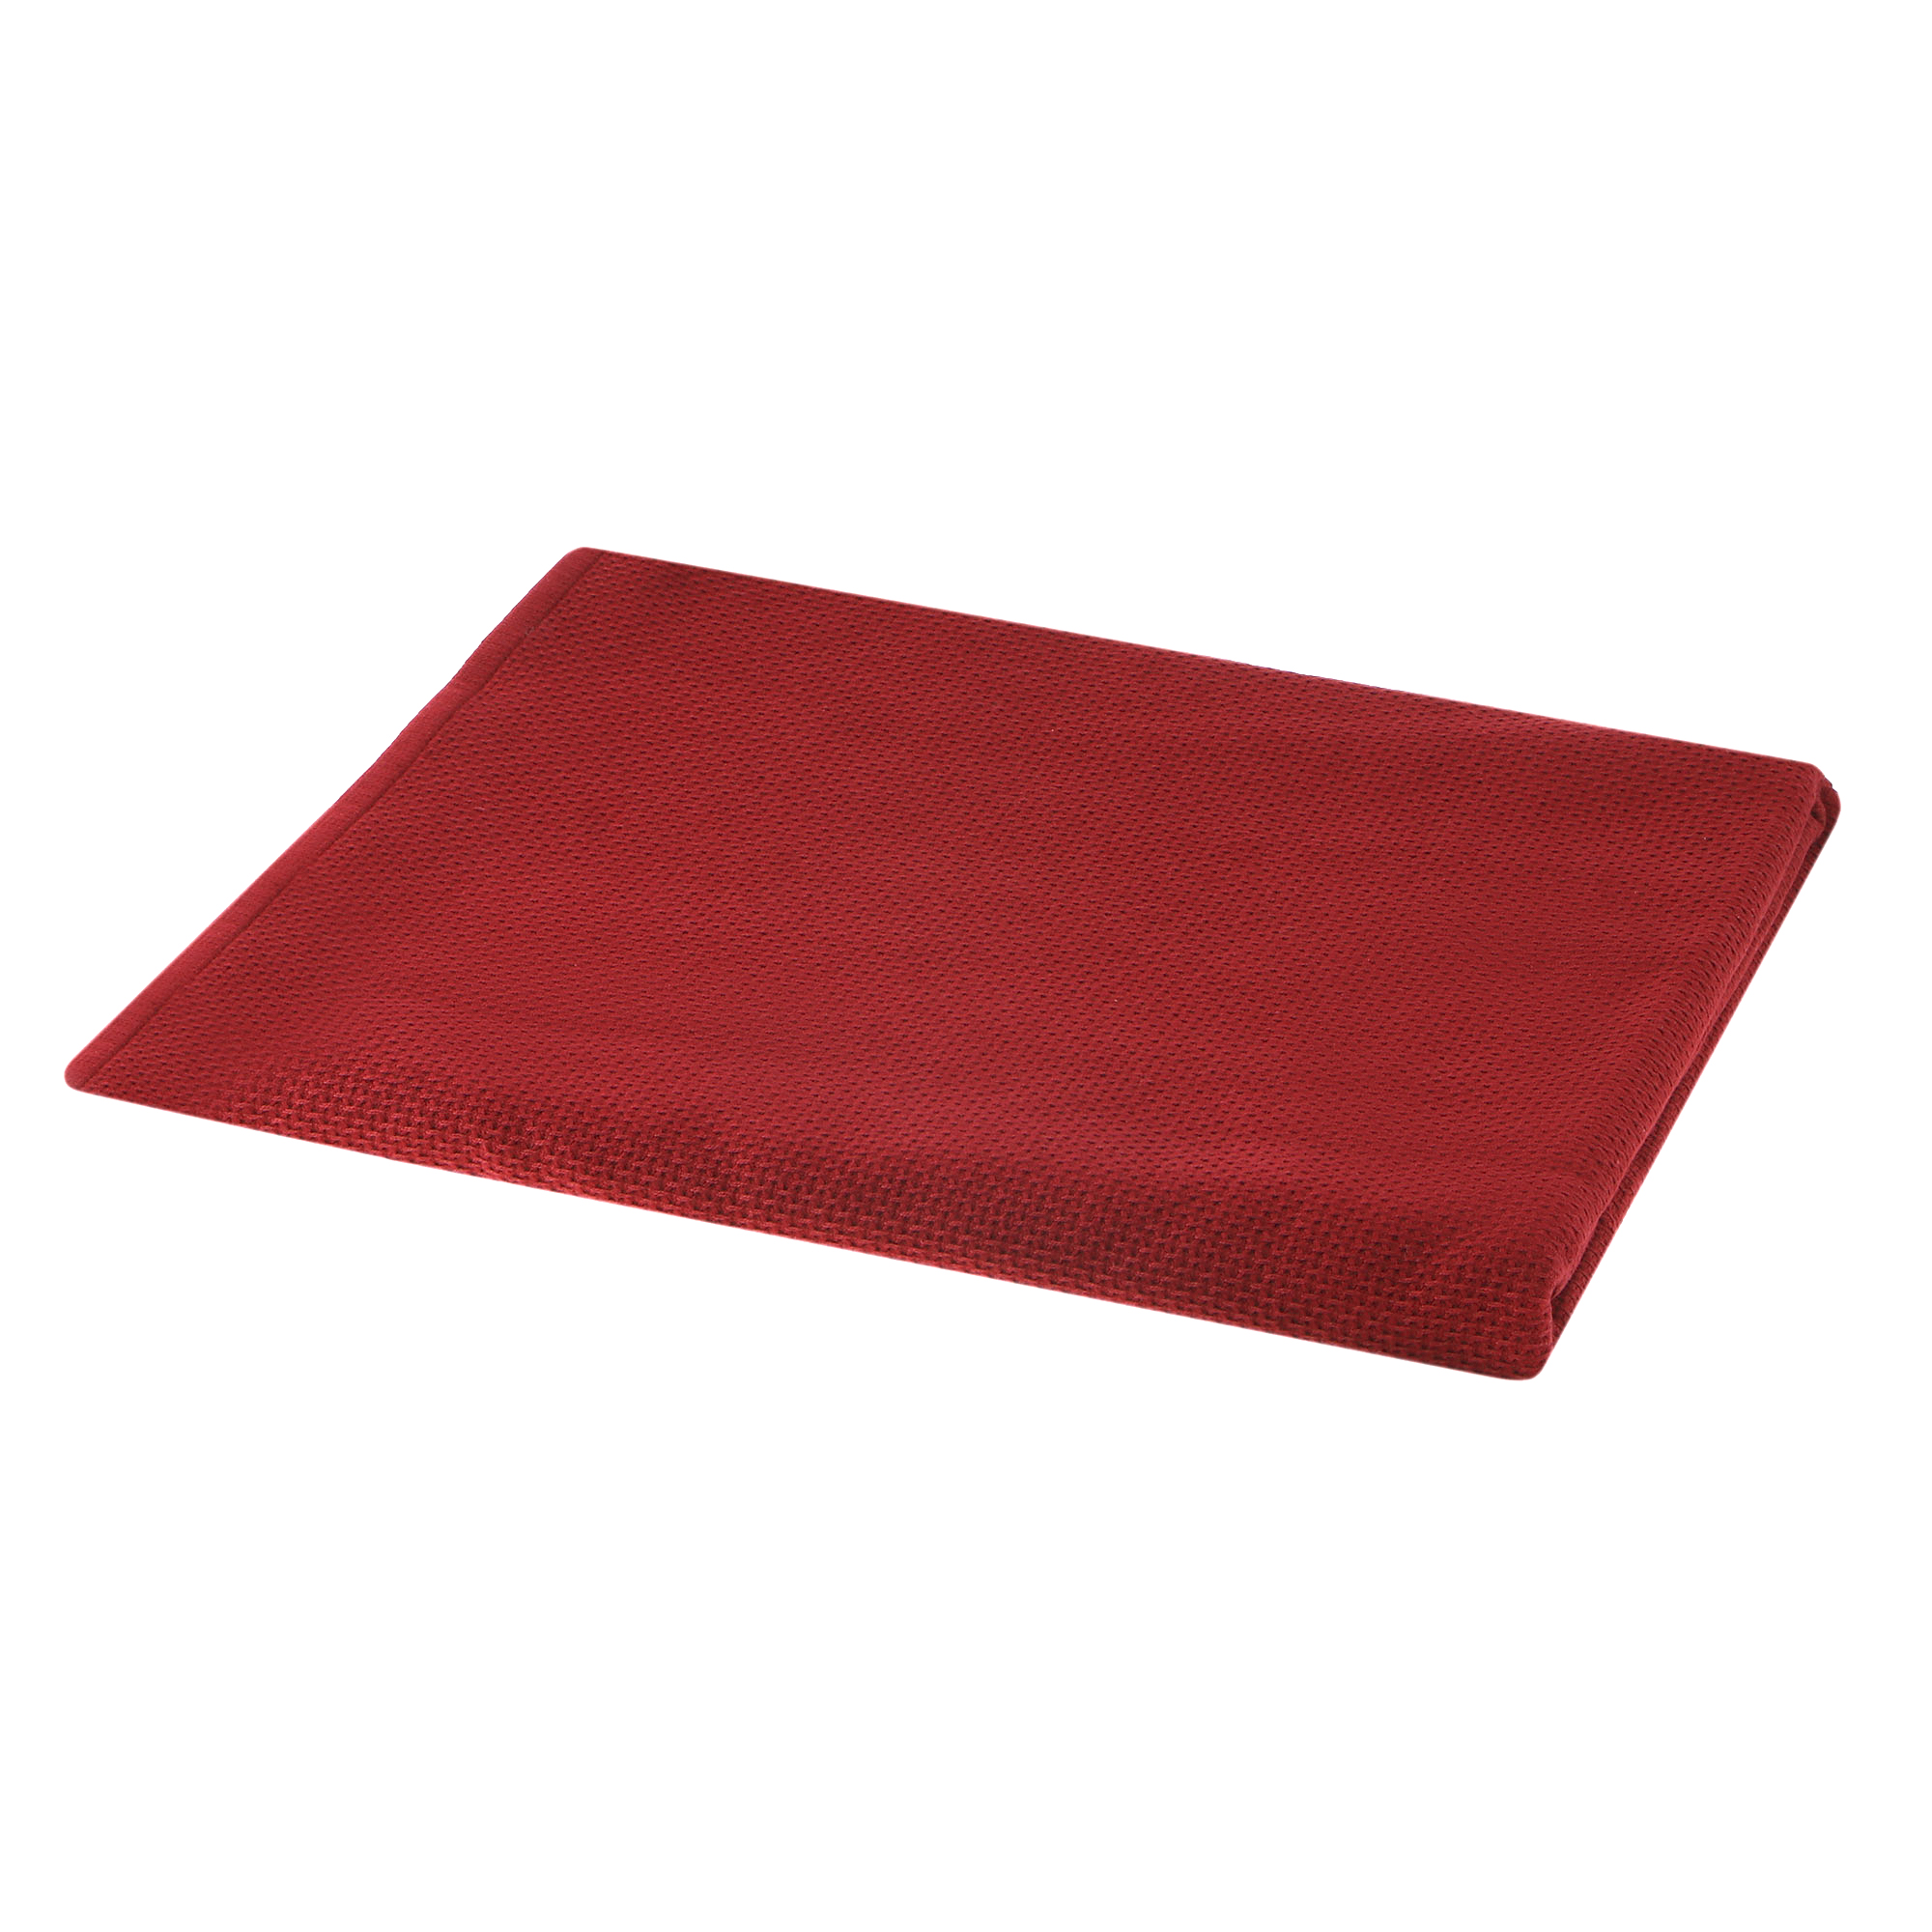 Полотенце Asil 150 x 200 см двухстороннее темно-красное